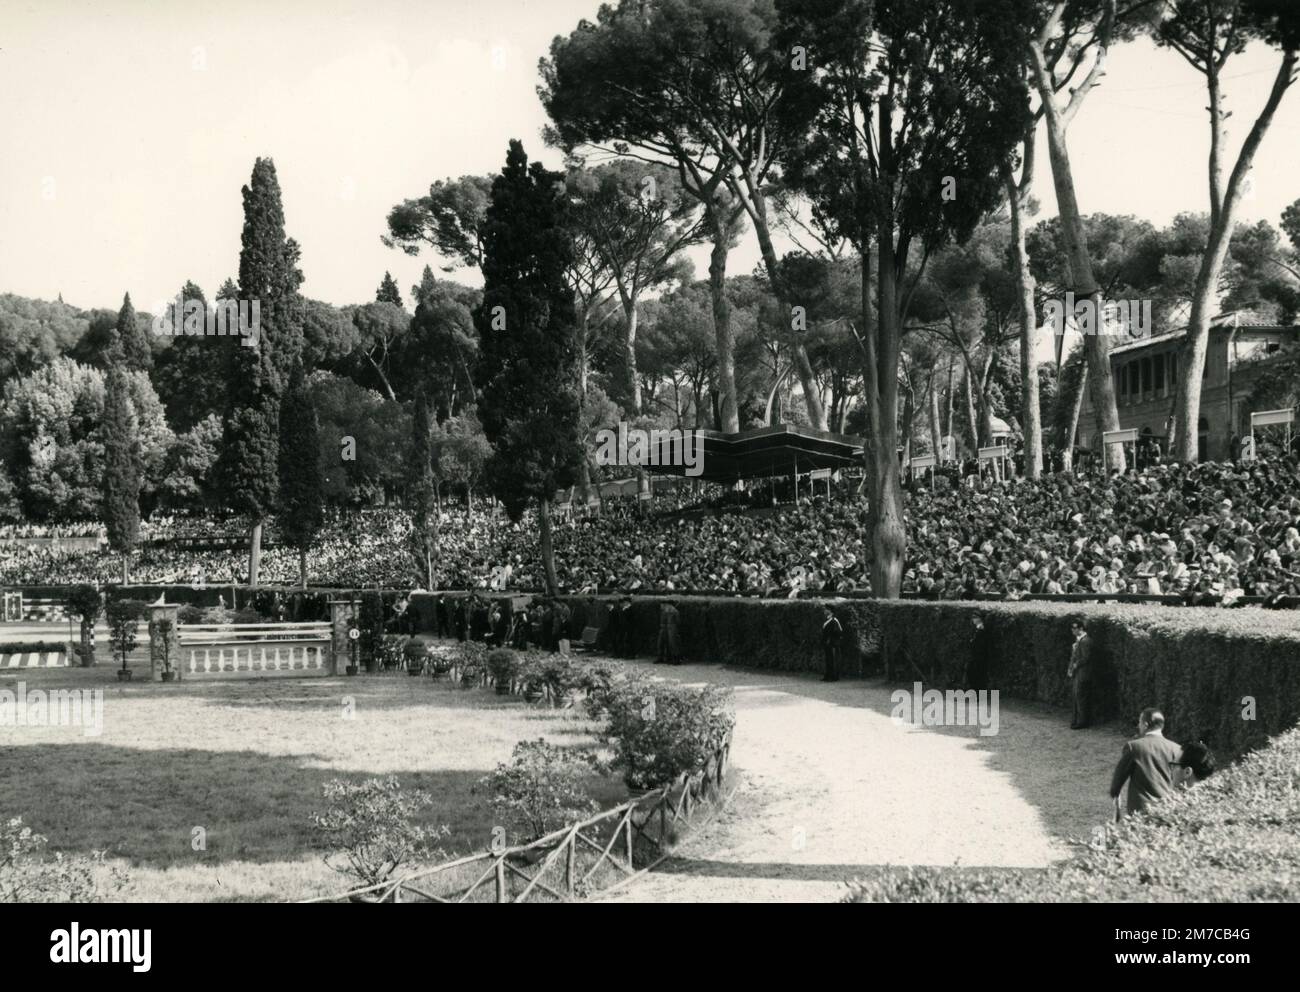 Vue du public du spectacle équestre de Piazza di Siena, Rome, Italie 1960s Banque D'Images